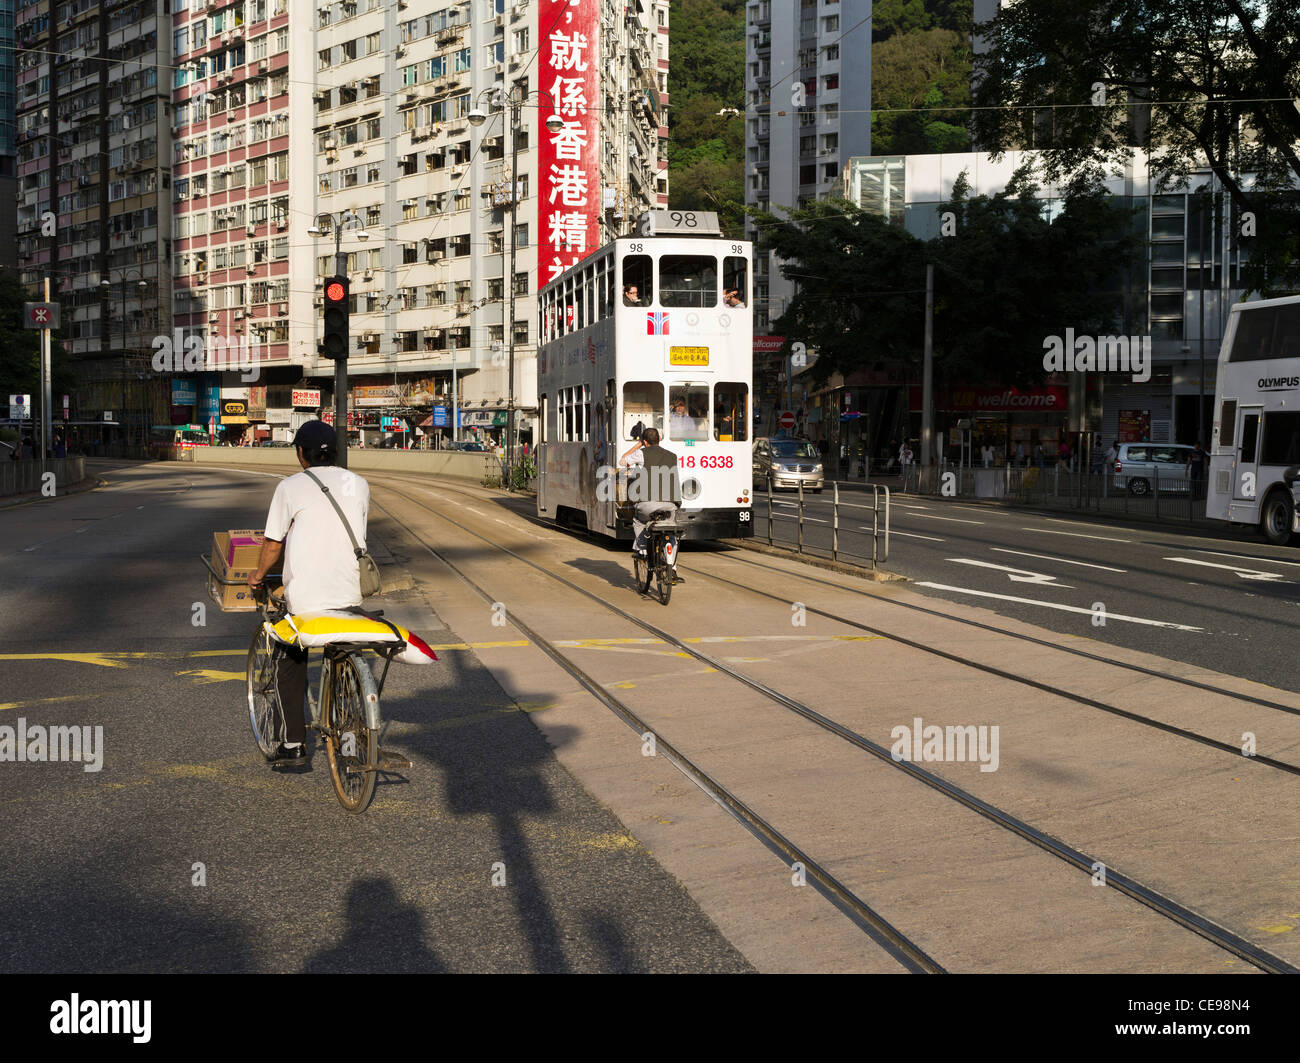 dh  CAUSEWAY BAY HONG KONG Bicycle traffic and Hong Kong Tram chinese road Stock Photo